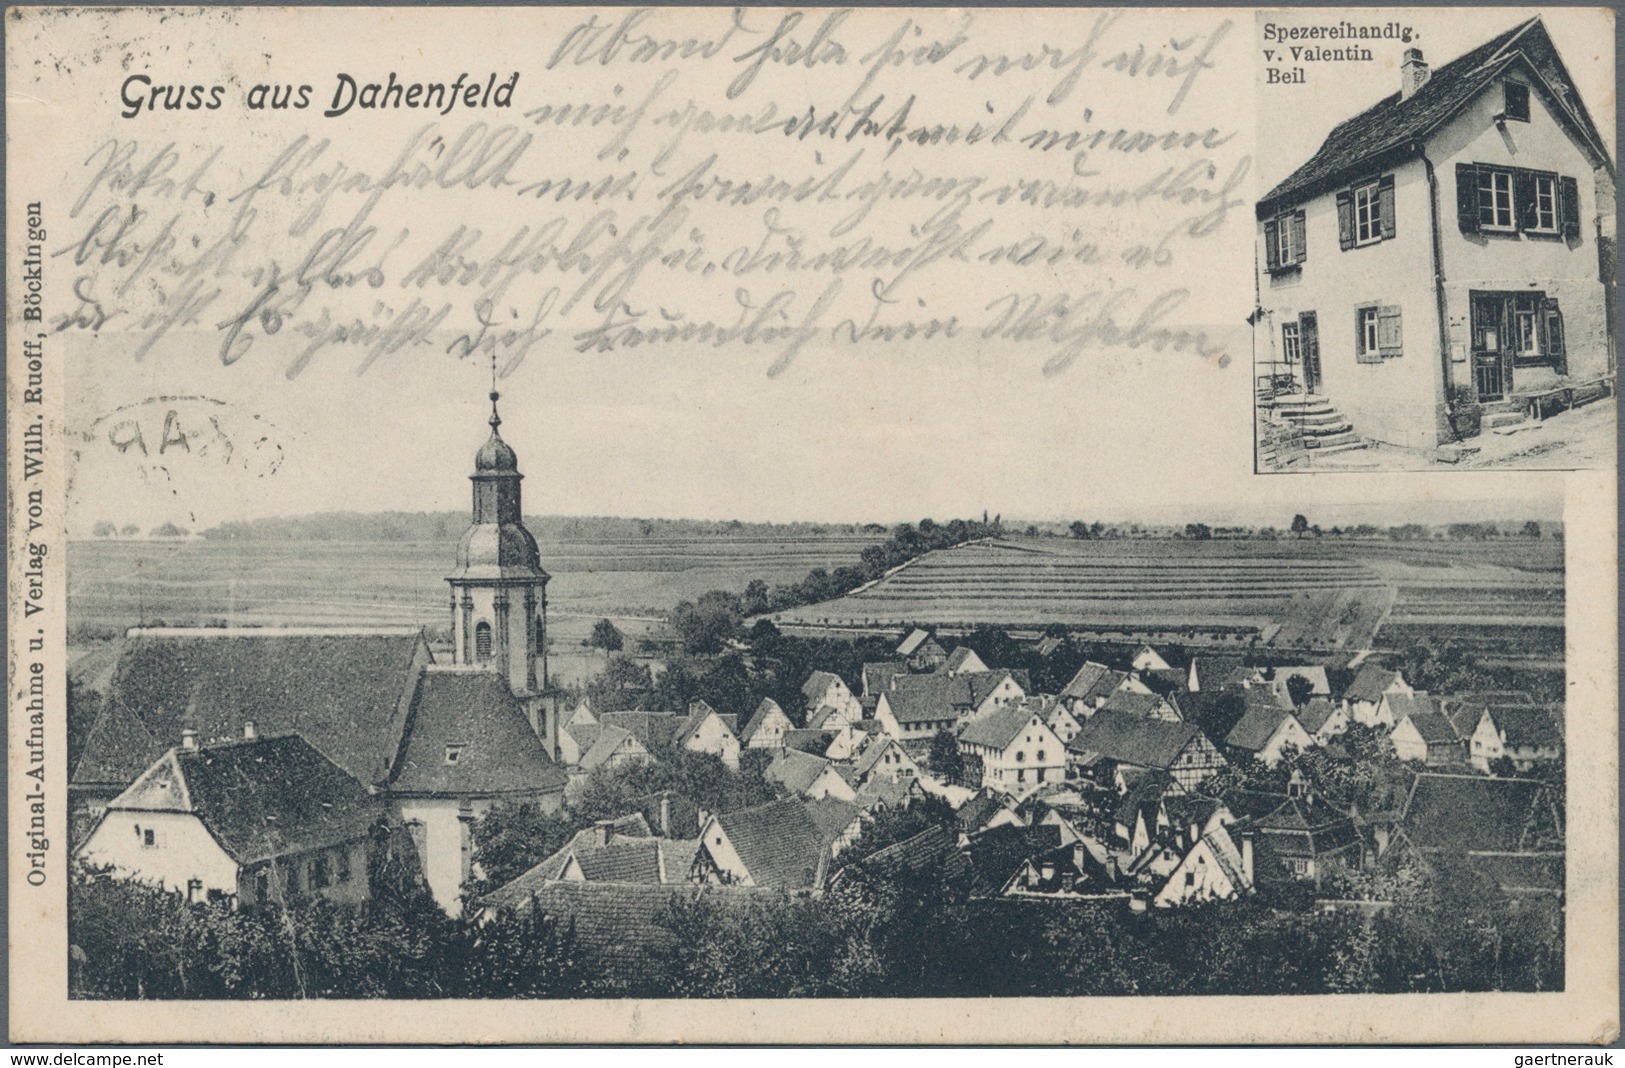 Ansichtskarten: Deutschland: 1910/1920 (ca.), Deutschland und etwas Europa, Sammlungsbestand von ca.